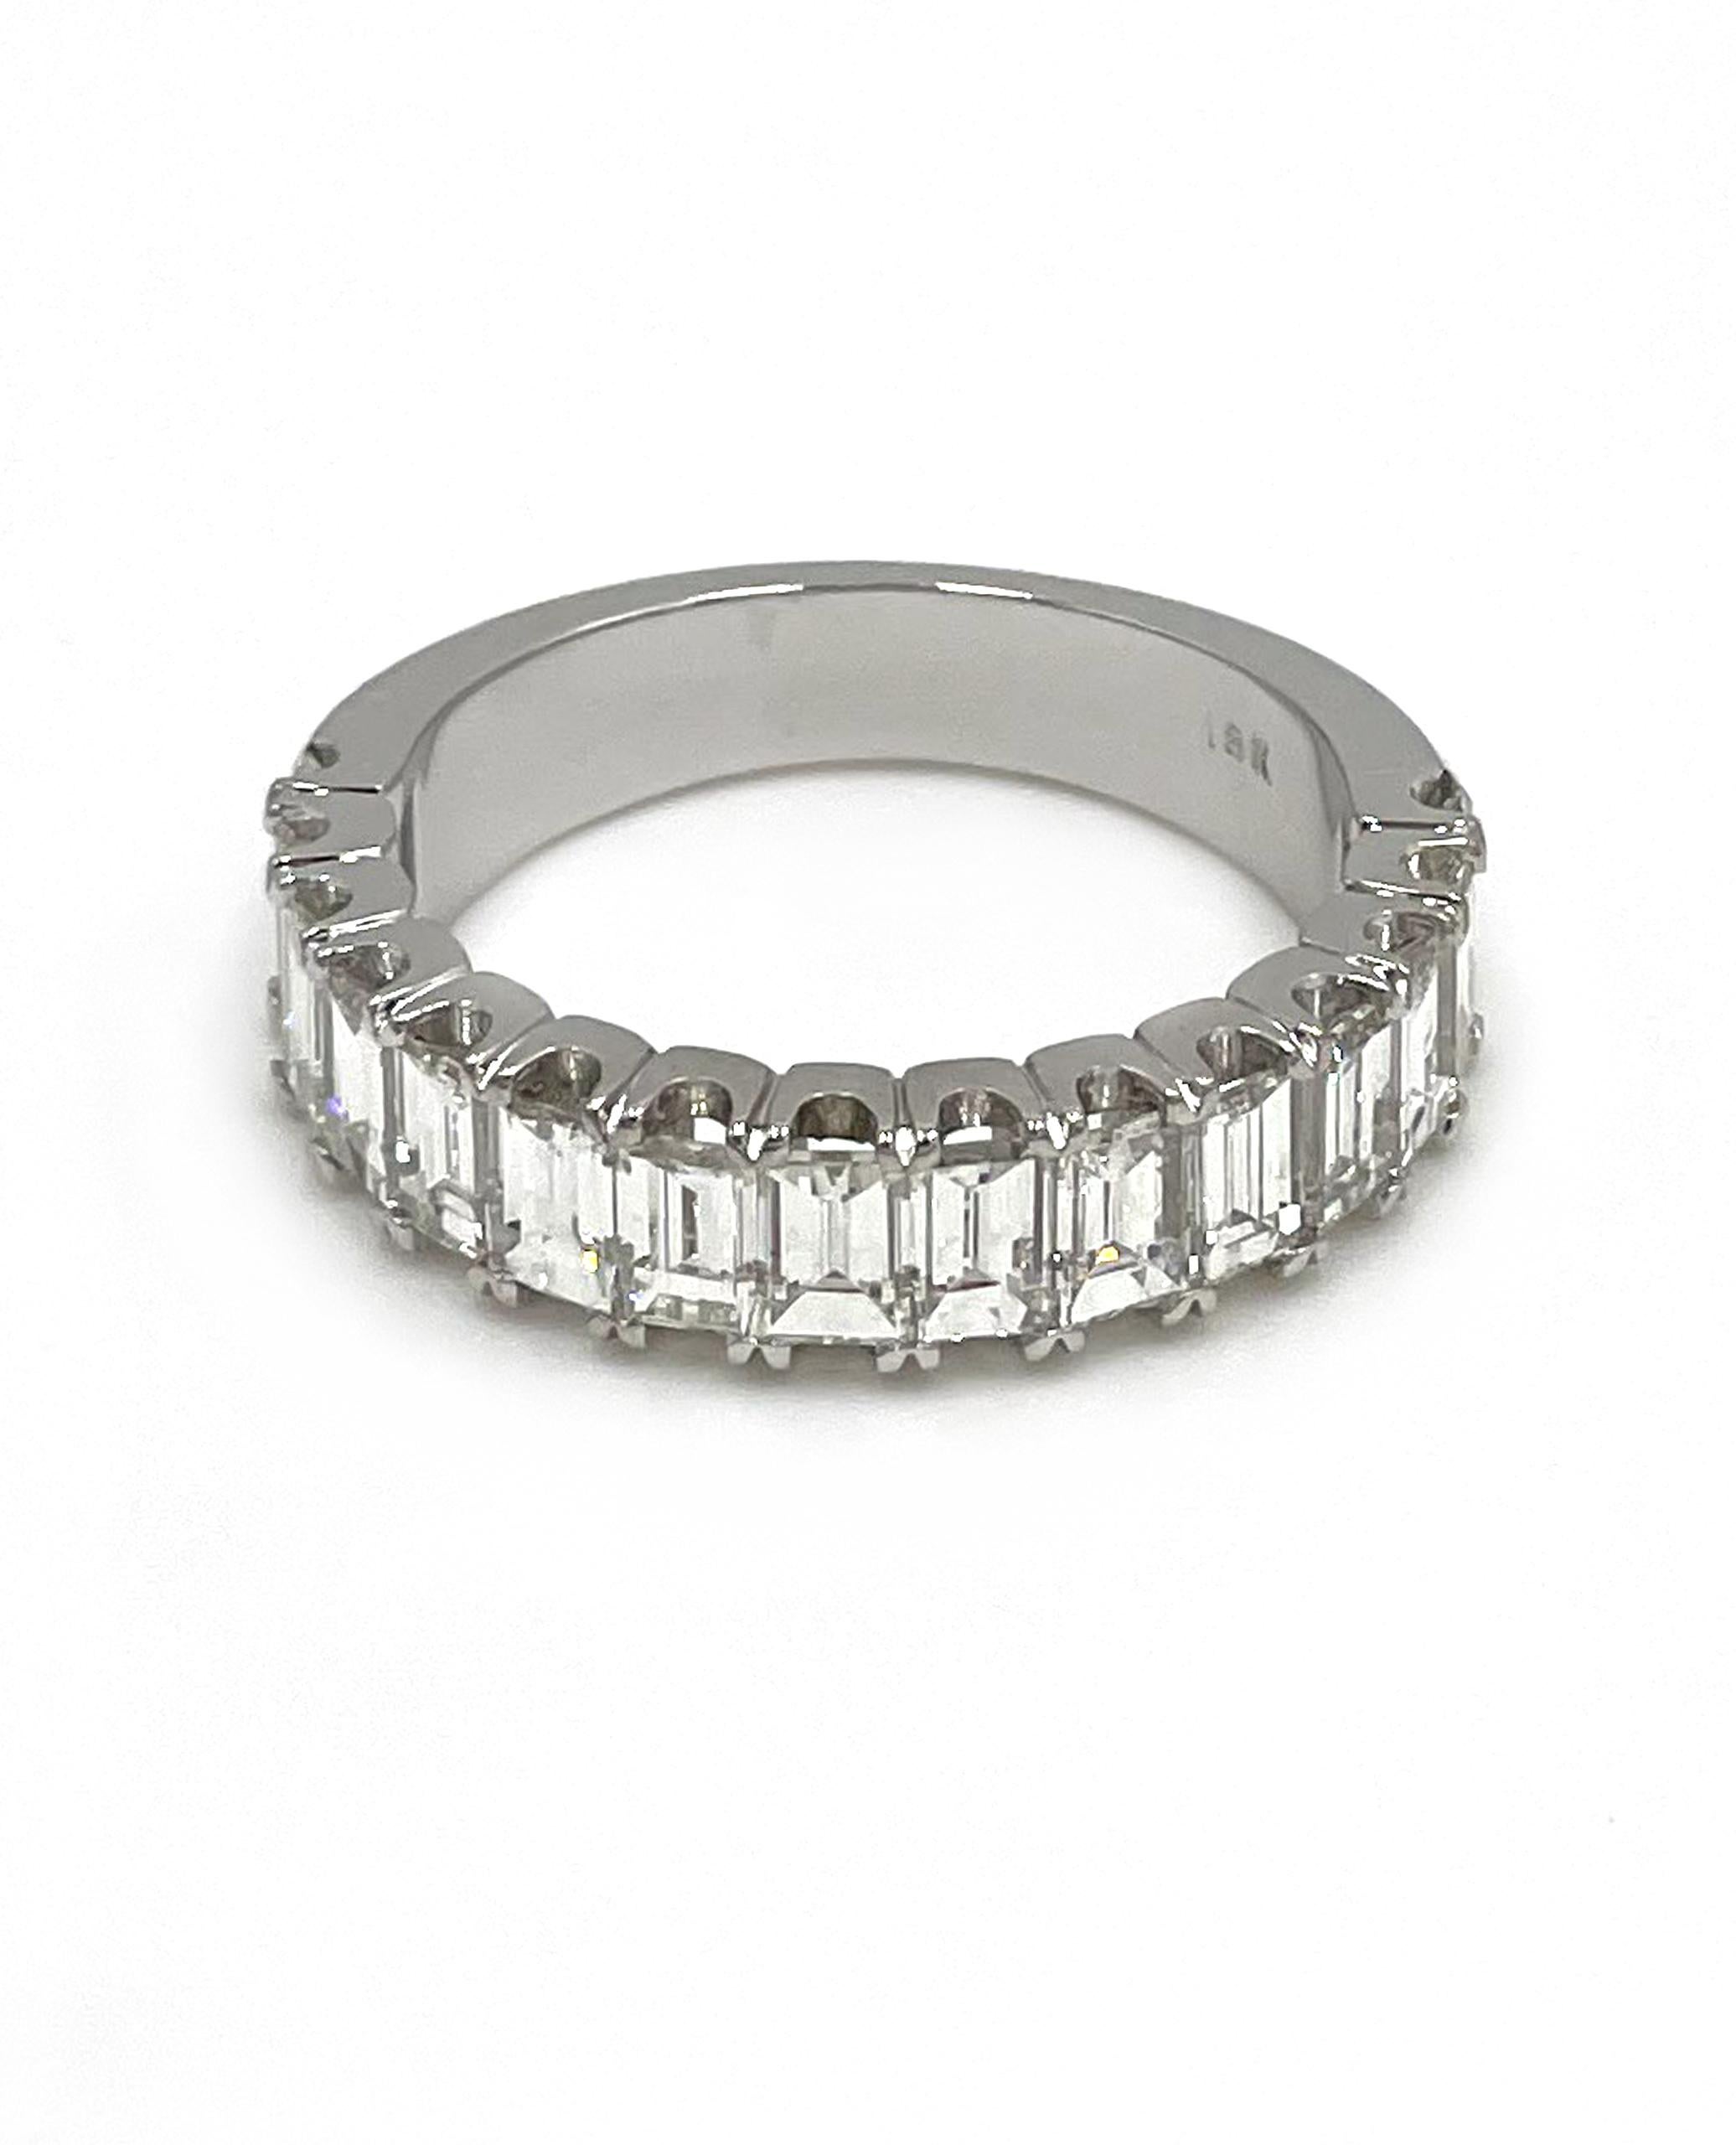 18K Weißgold Ring mit 15 Baguette-Diamanten 2,44 Karat: F/G Farbe, VVS Reinheit.

* Fingergröße: 6.5
* Oberteil misst 5,16 mm breit
* Unten: 3,88 mm breit 
* Jahrestag. Hochzeitsband. Ring der rechten Hand. Diamantring.